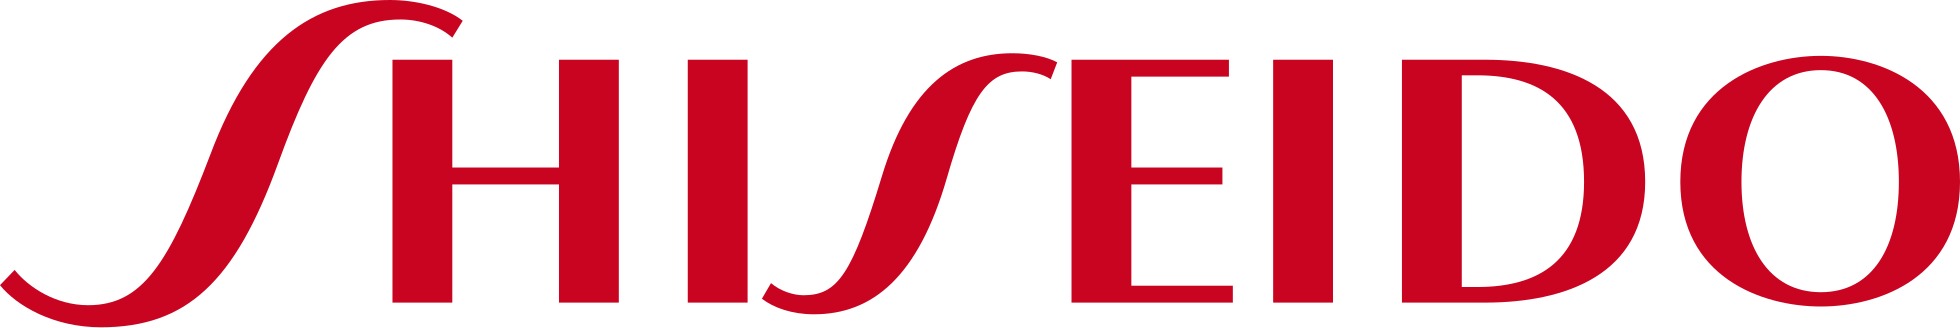 Shiseido logo